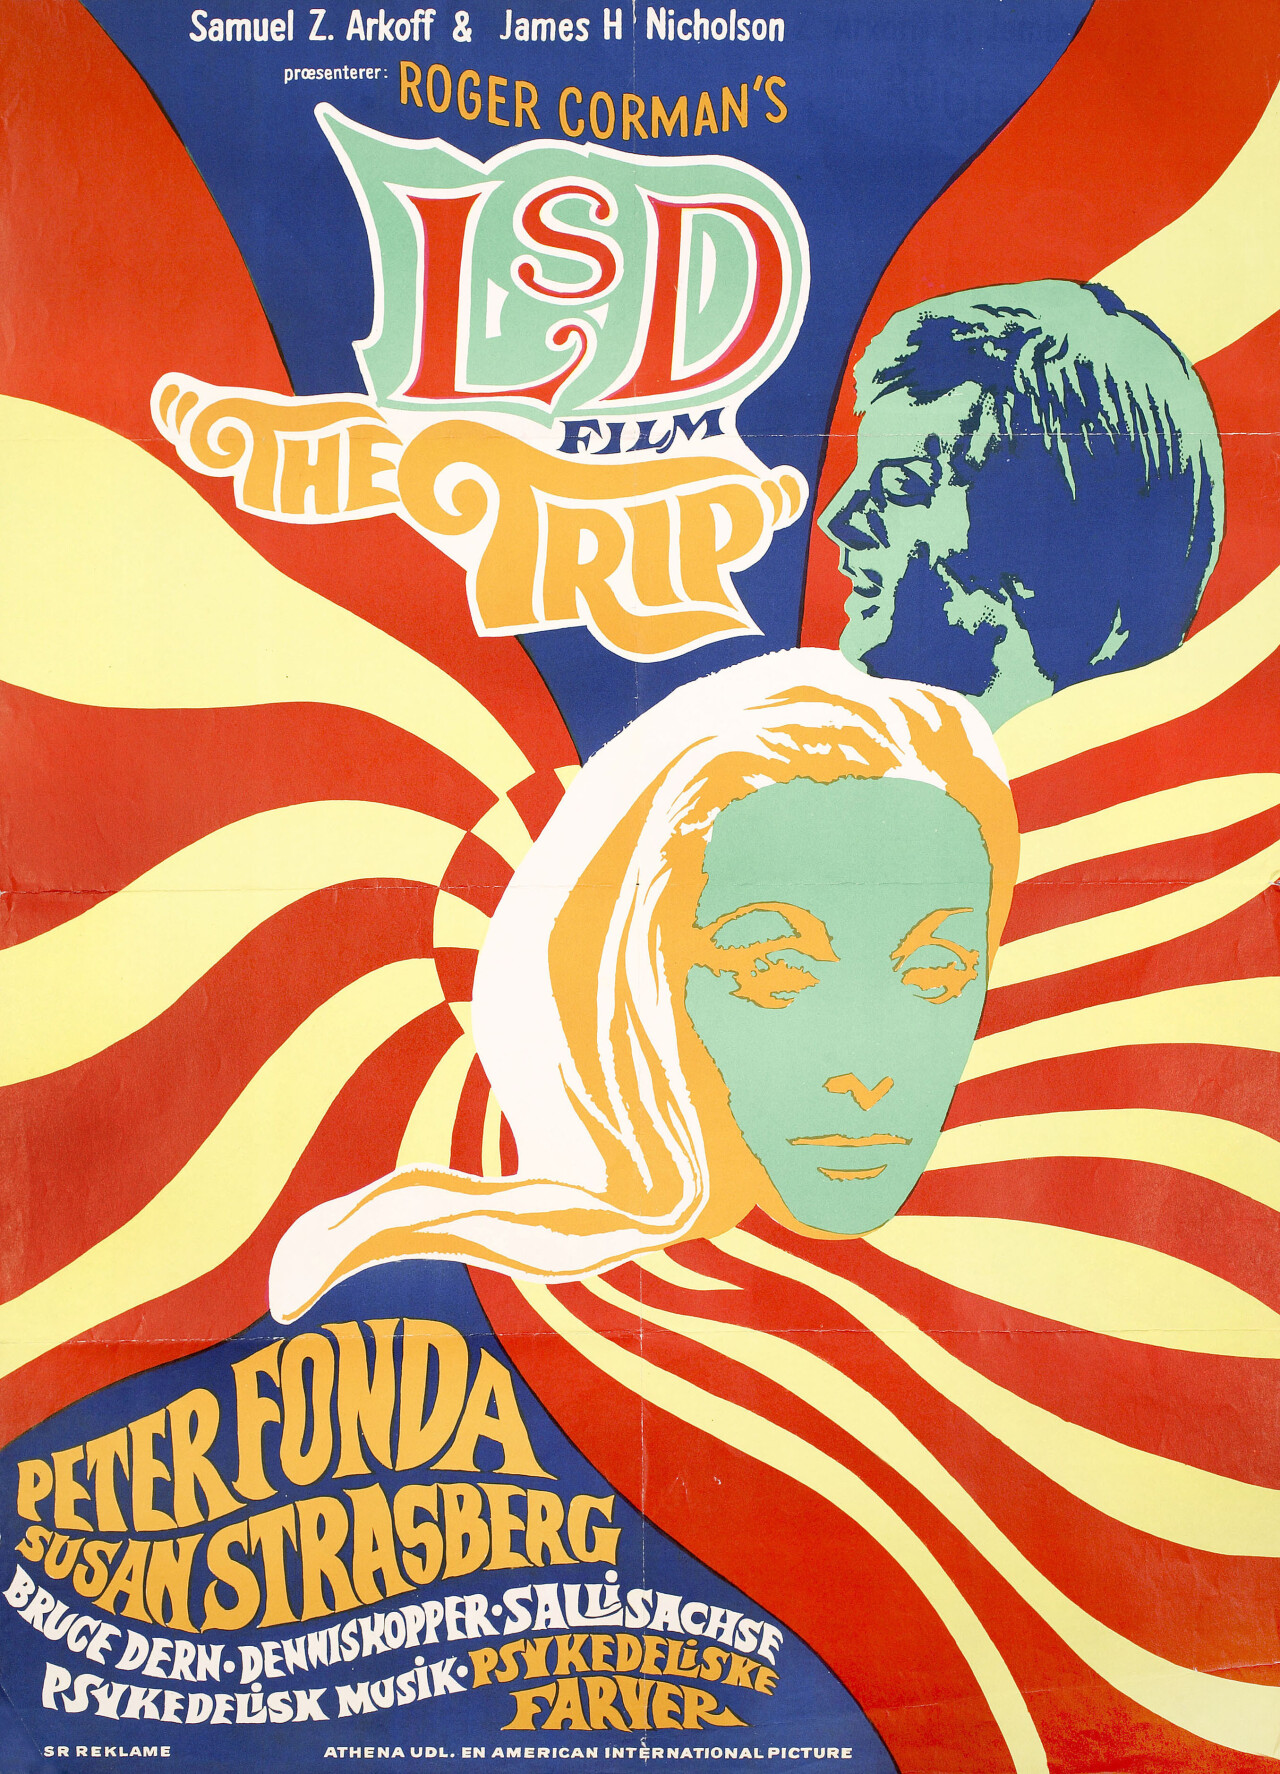 Поездка (The Trip, 1967), режиссёр Роджер Корман, кубинский постер к фильму (графический дизайн, 1967 год)